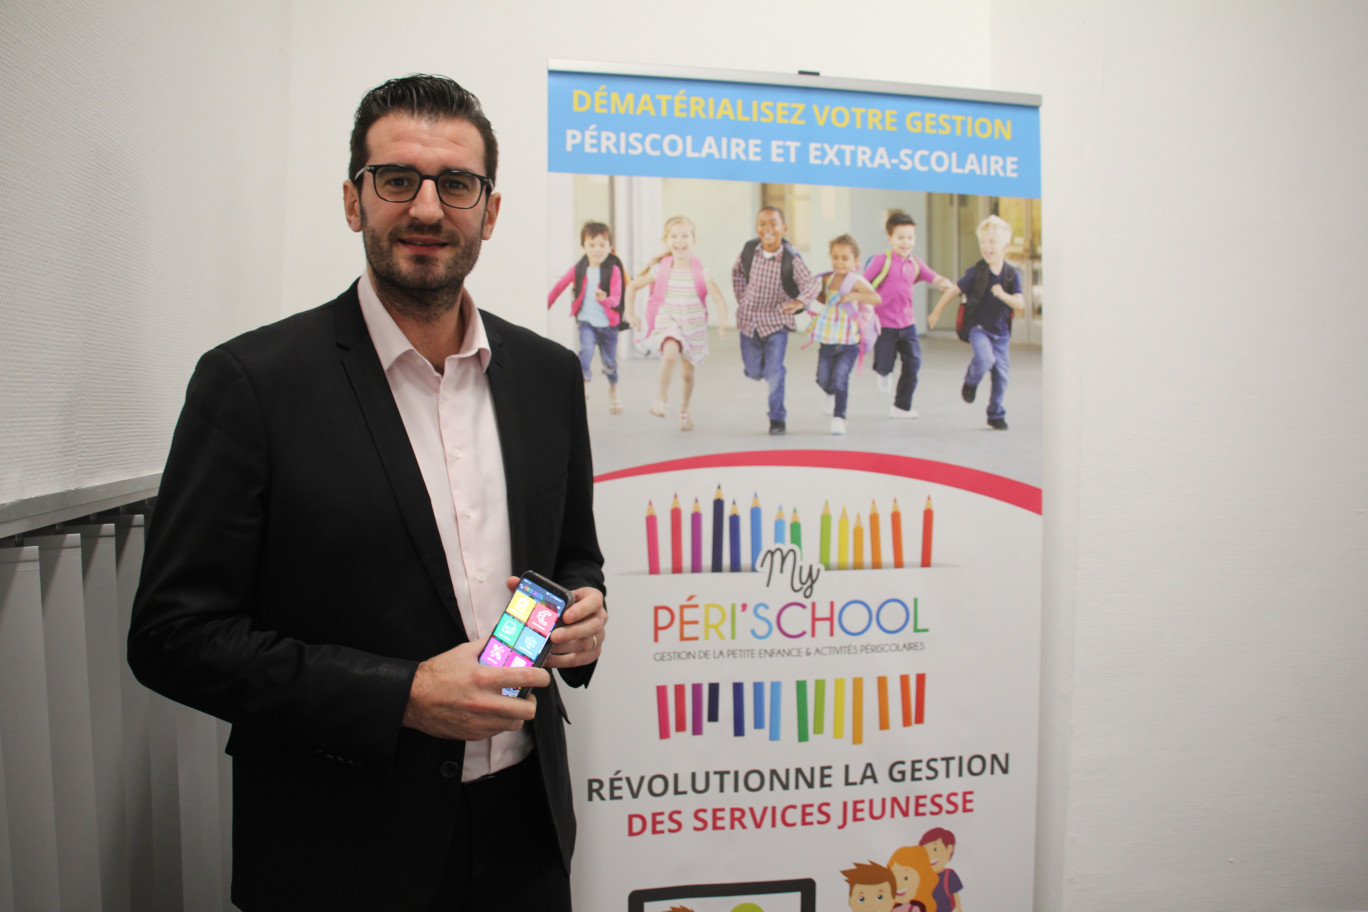 Le succès d’Arnaud Montewis et de Waigéo s’explique en partie par le lancement de solutions innovantes  comme Myperischool.  